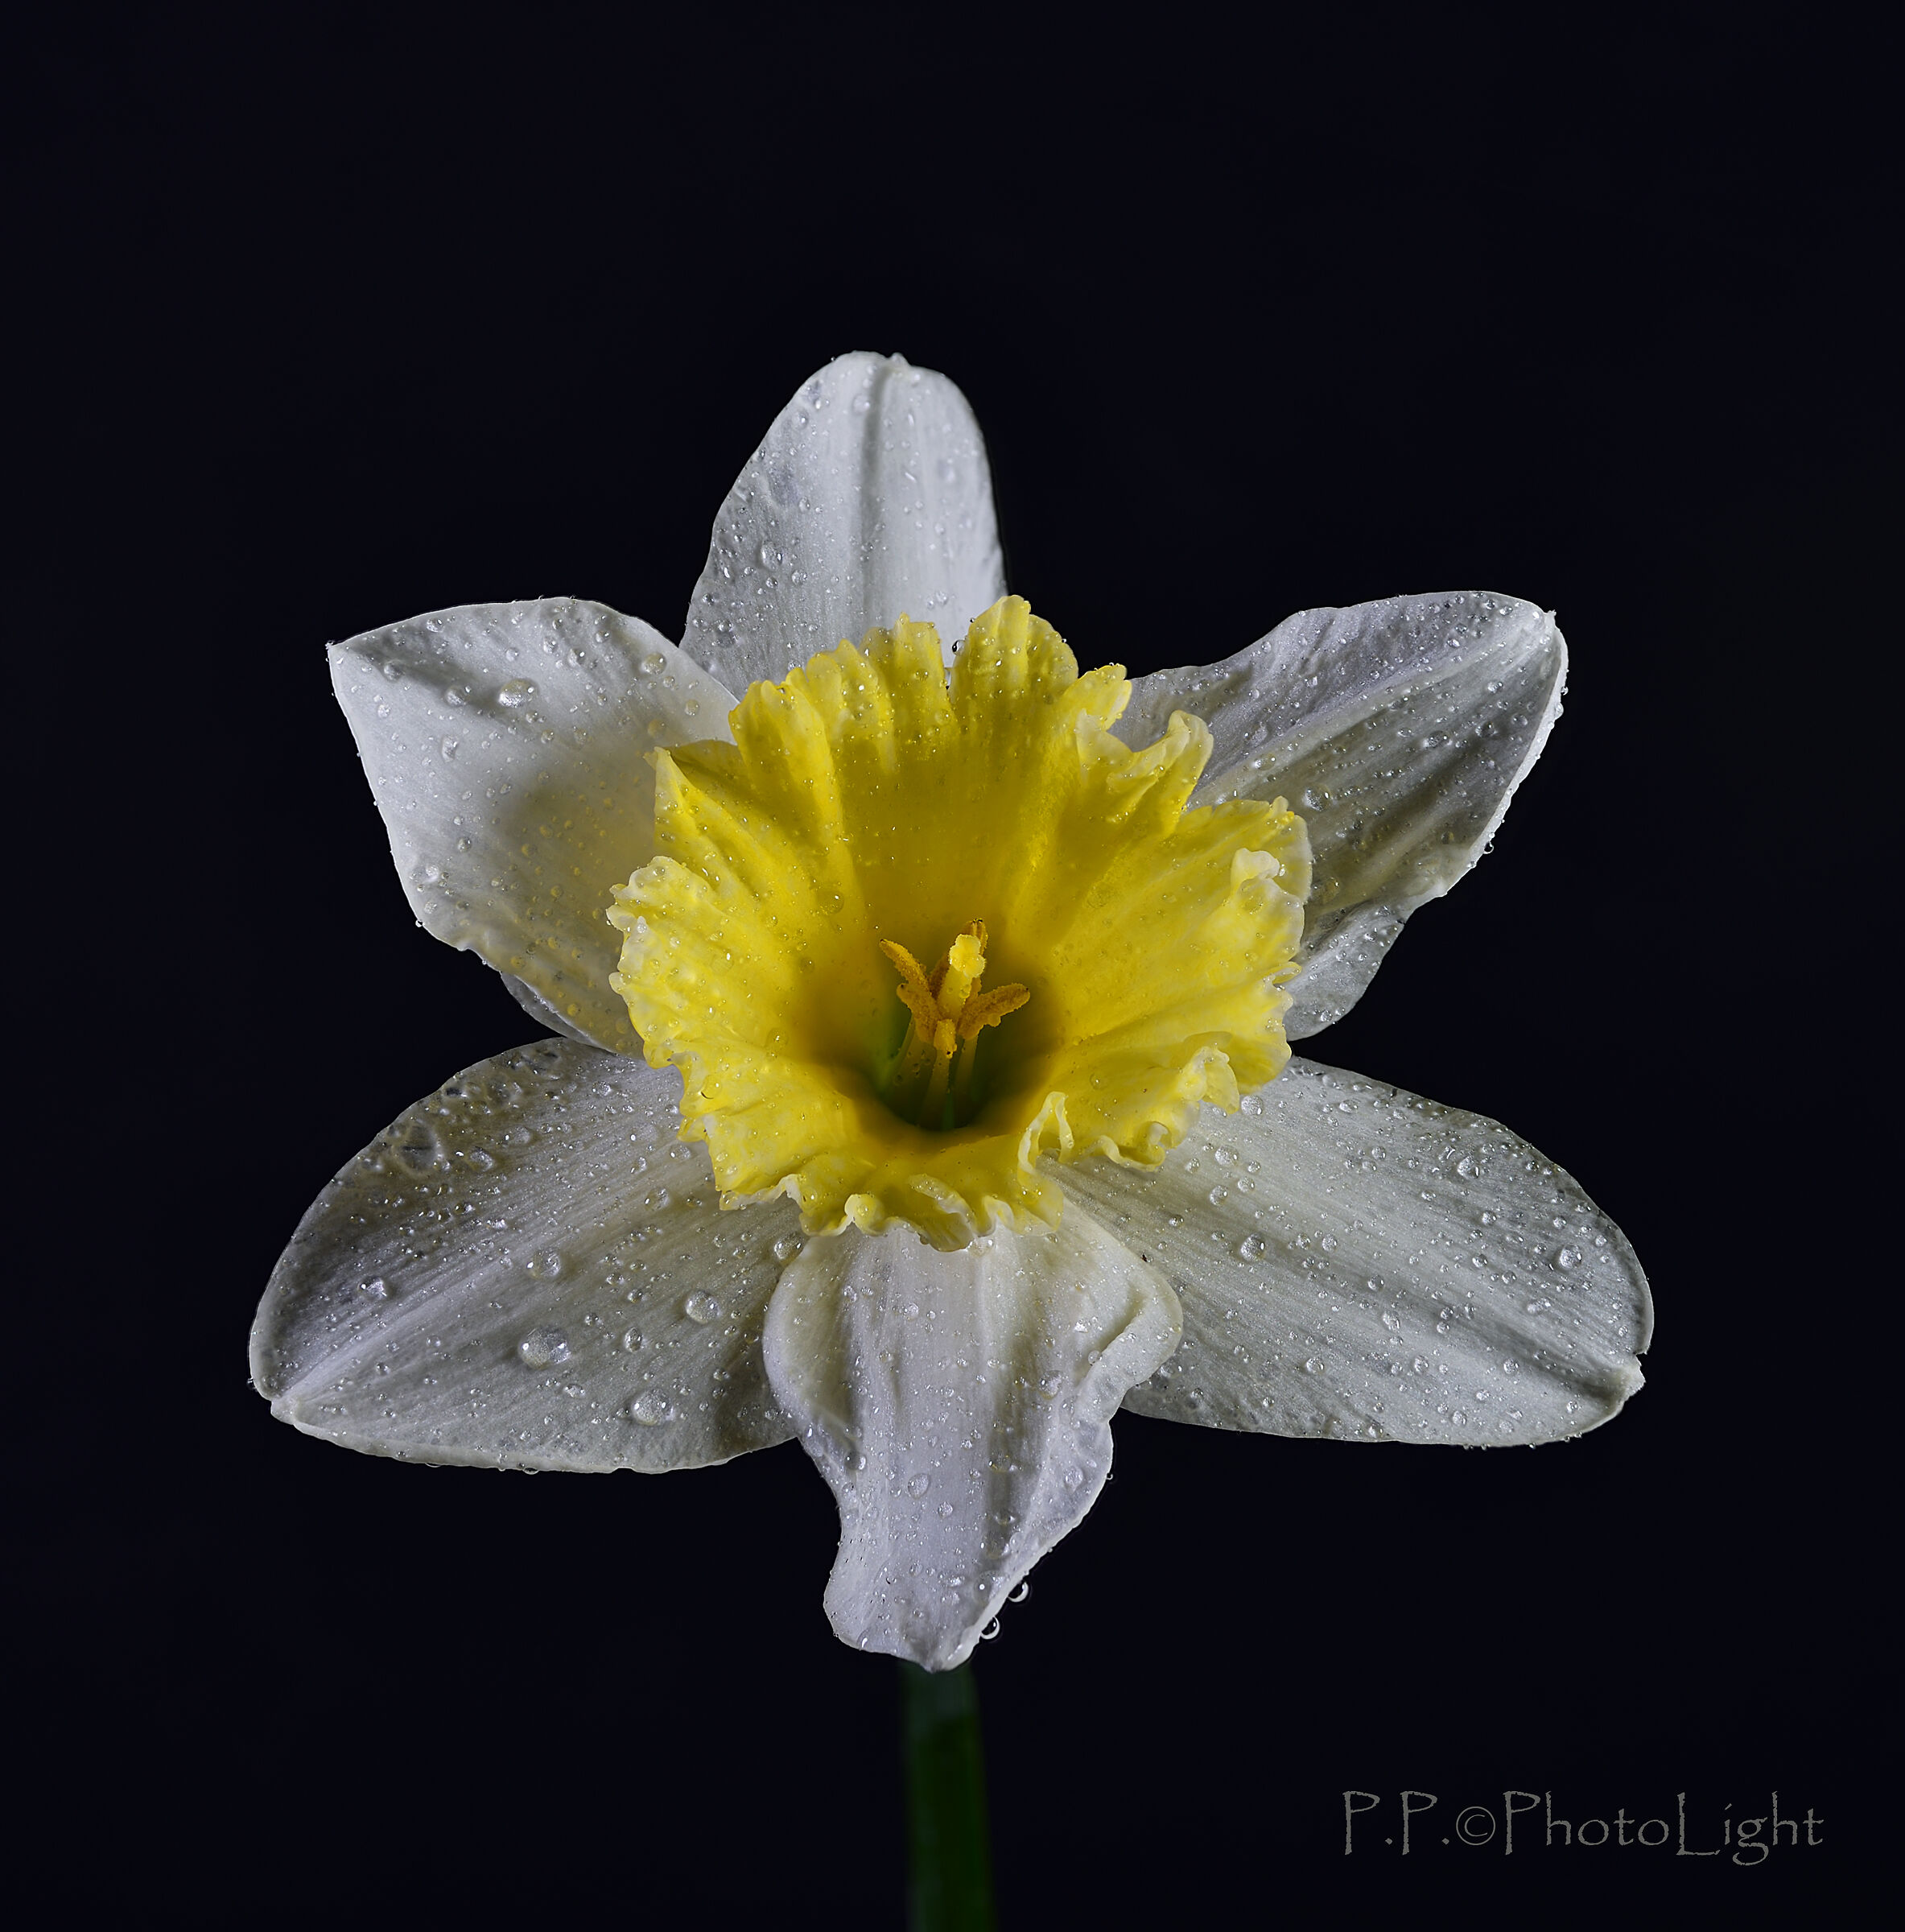 The daffodil...